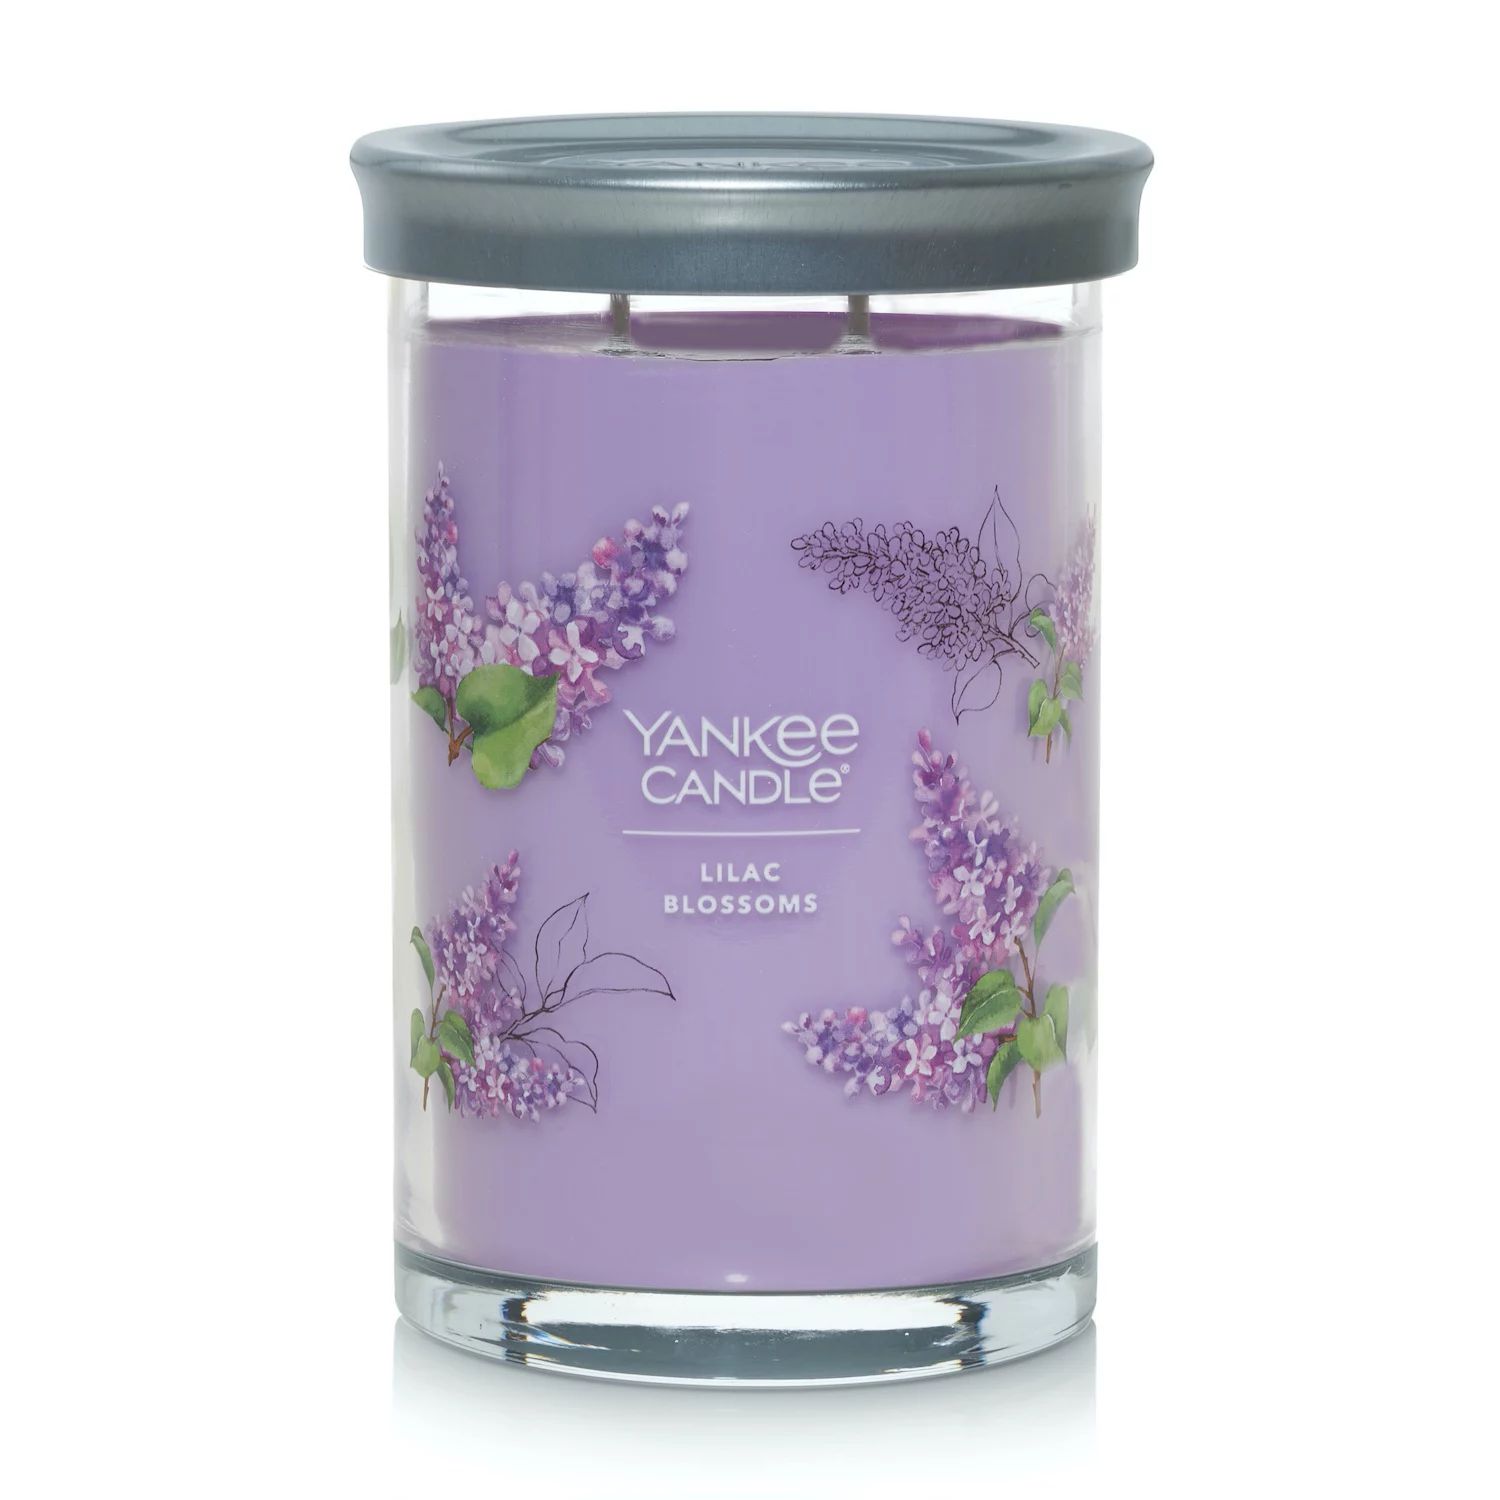 Yankee Candle Lilac Blossoms Signature стаканная свеча с 2 фитилями